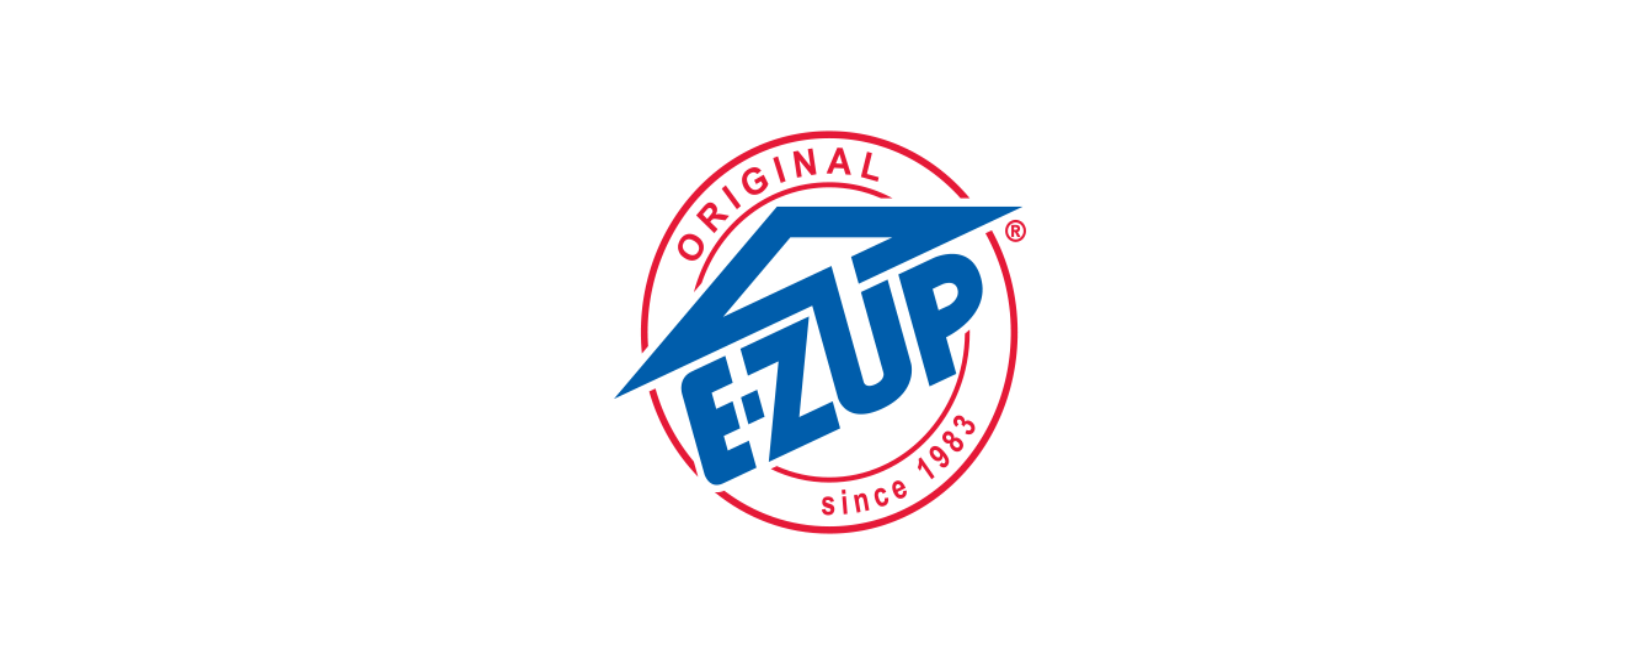 E-Z UP Discount Code 2022